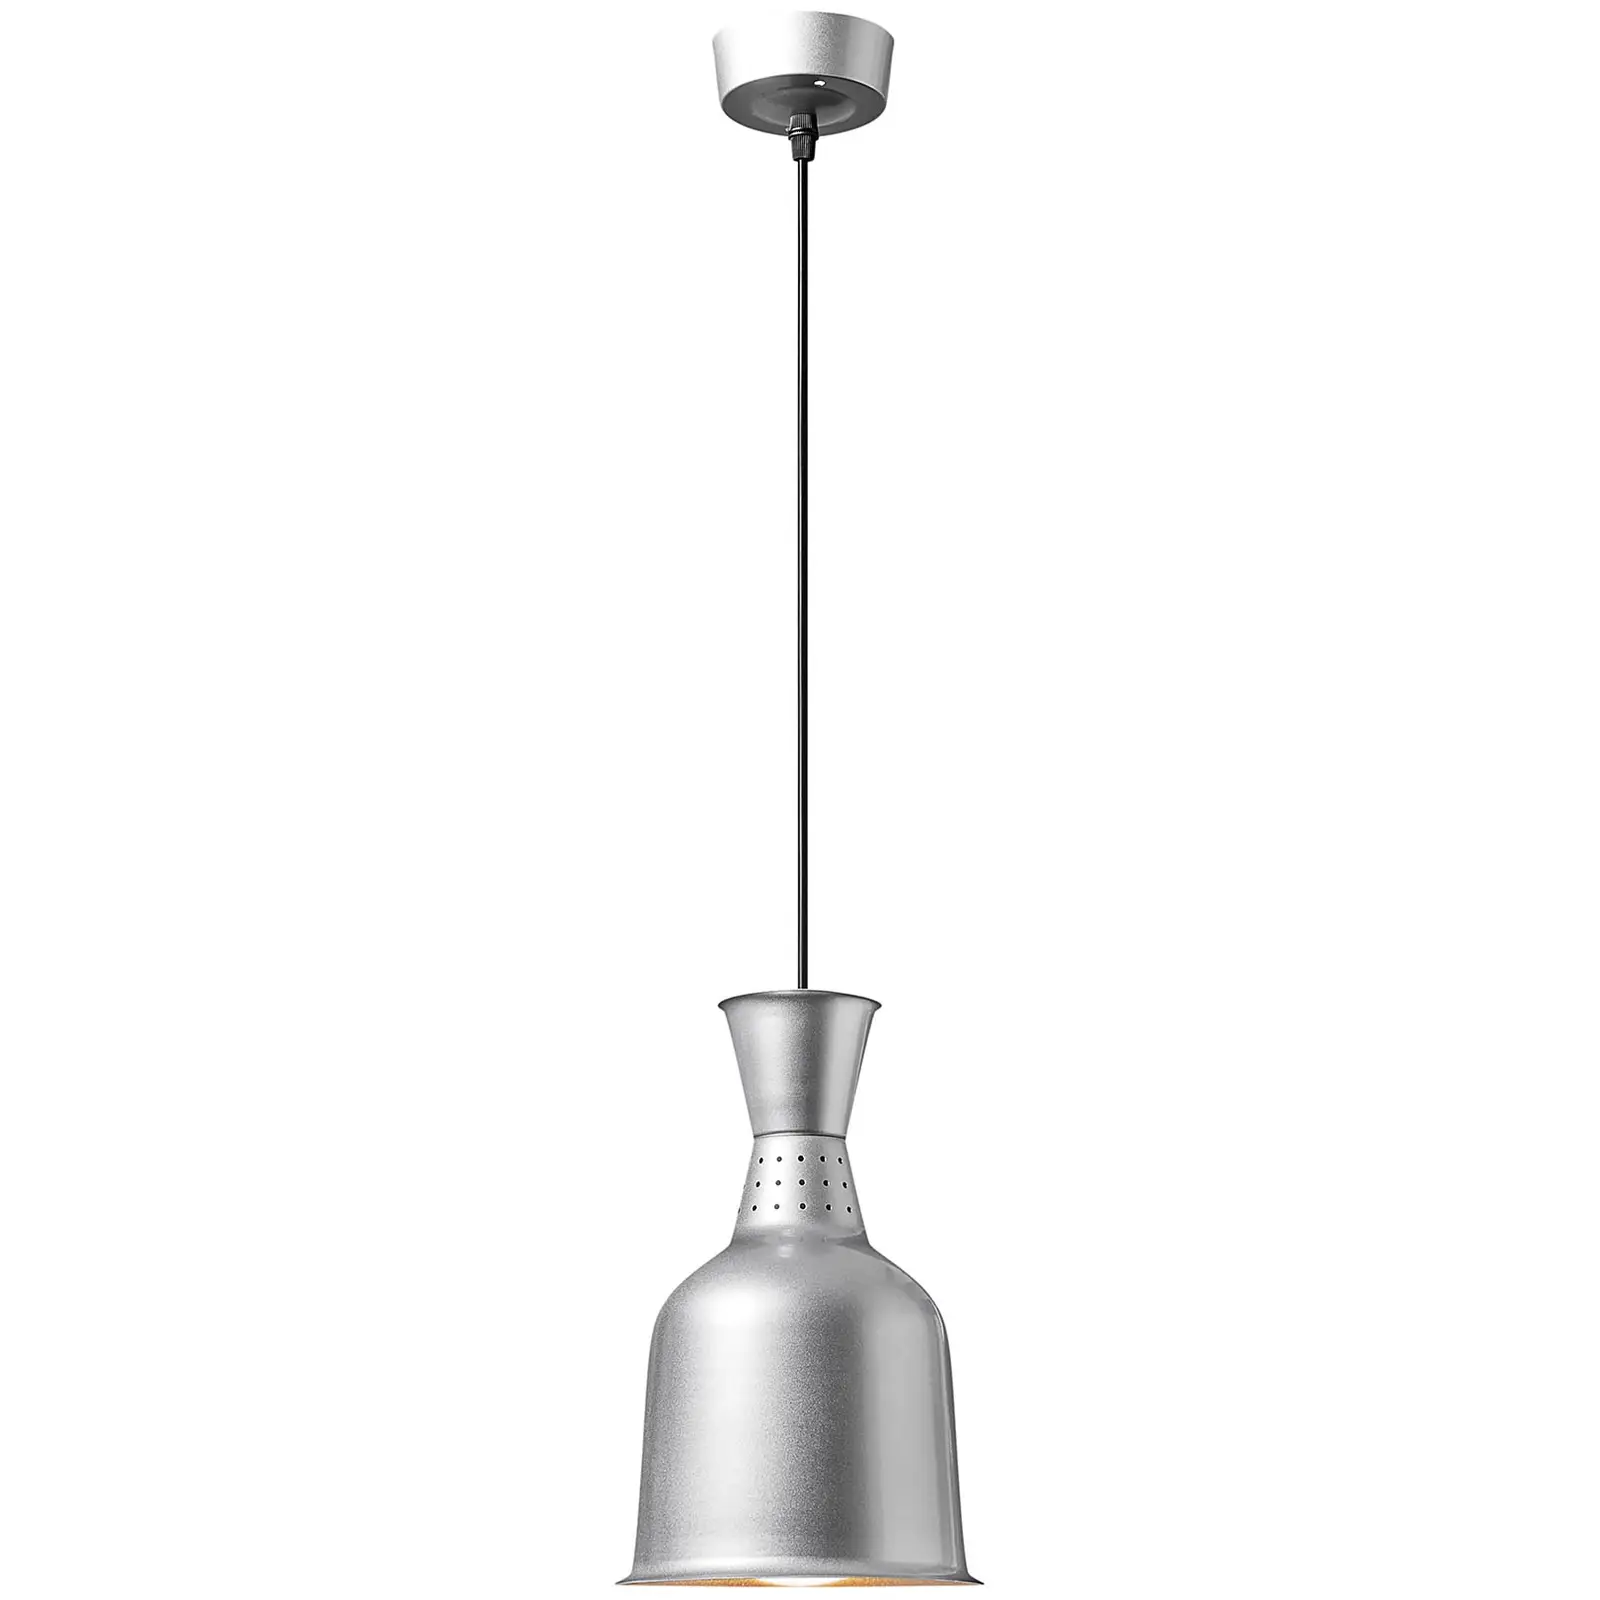 Lampada riscaldante - argento - 18.5 x 18.5 x 28.5 cm  - Acciaio